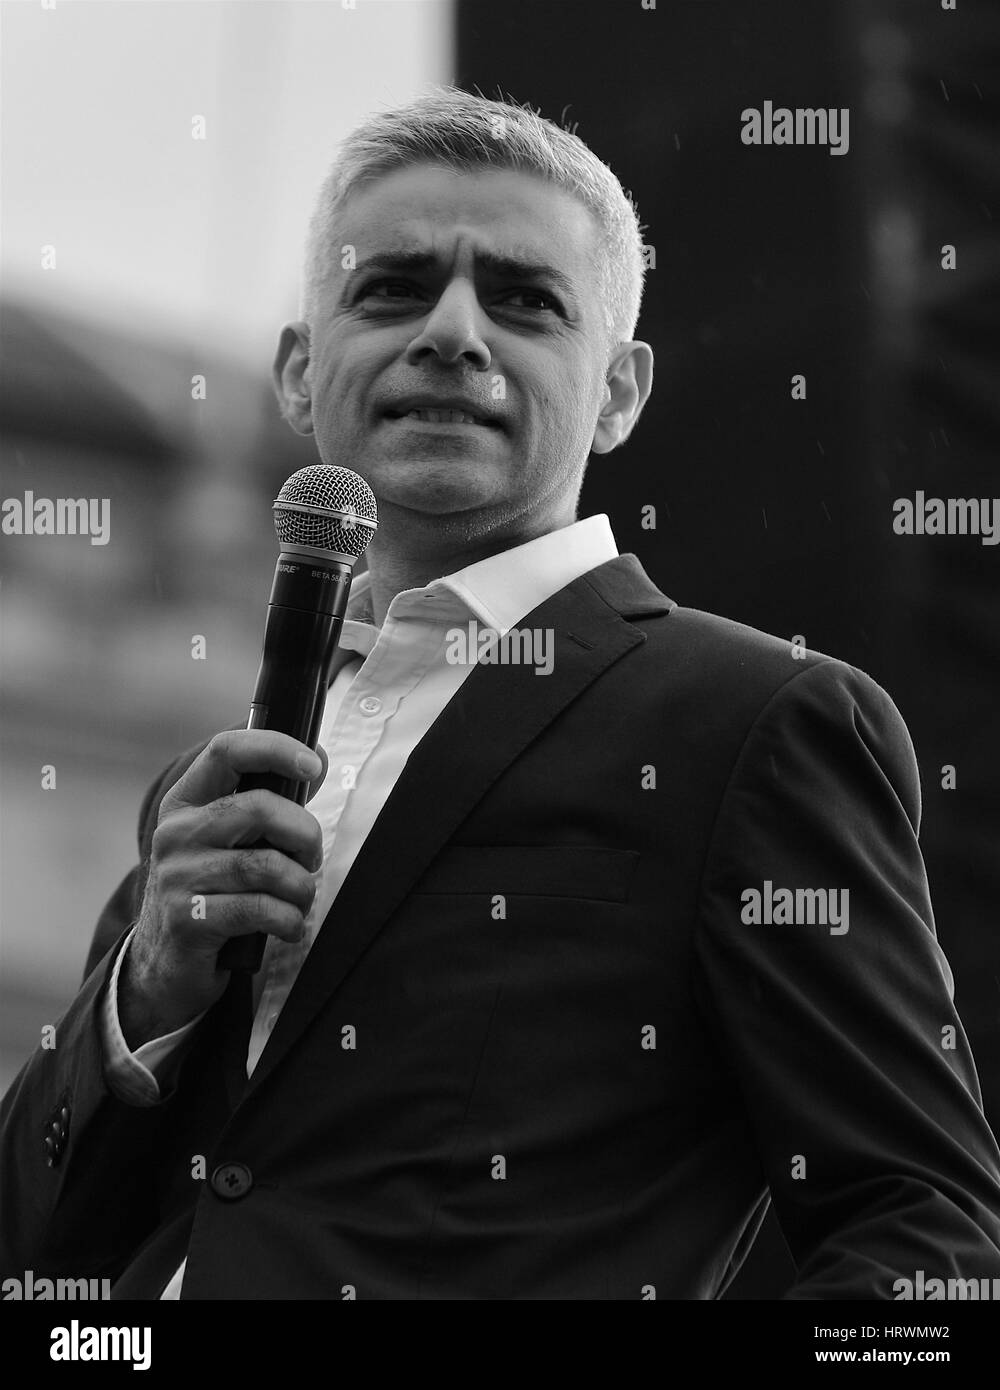 Londra, UK, 26, 02, 2017: il sindaco di Londra Sadiq Khan ( Immagine Altered digitalmente a monocromatica) assiste un esame gratuito di Oscar- nominato film iraniano il venditore a Trafalgar Square a Londra Foto Stock